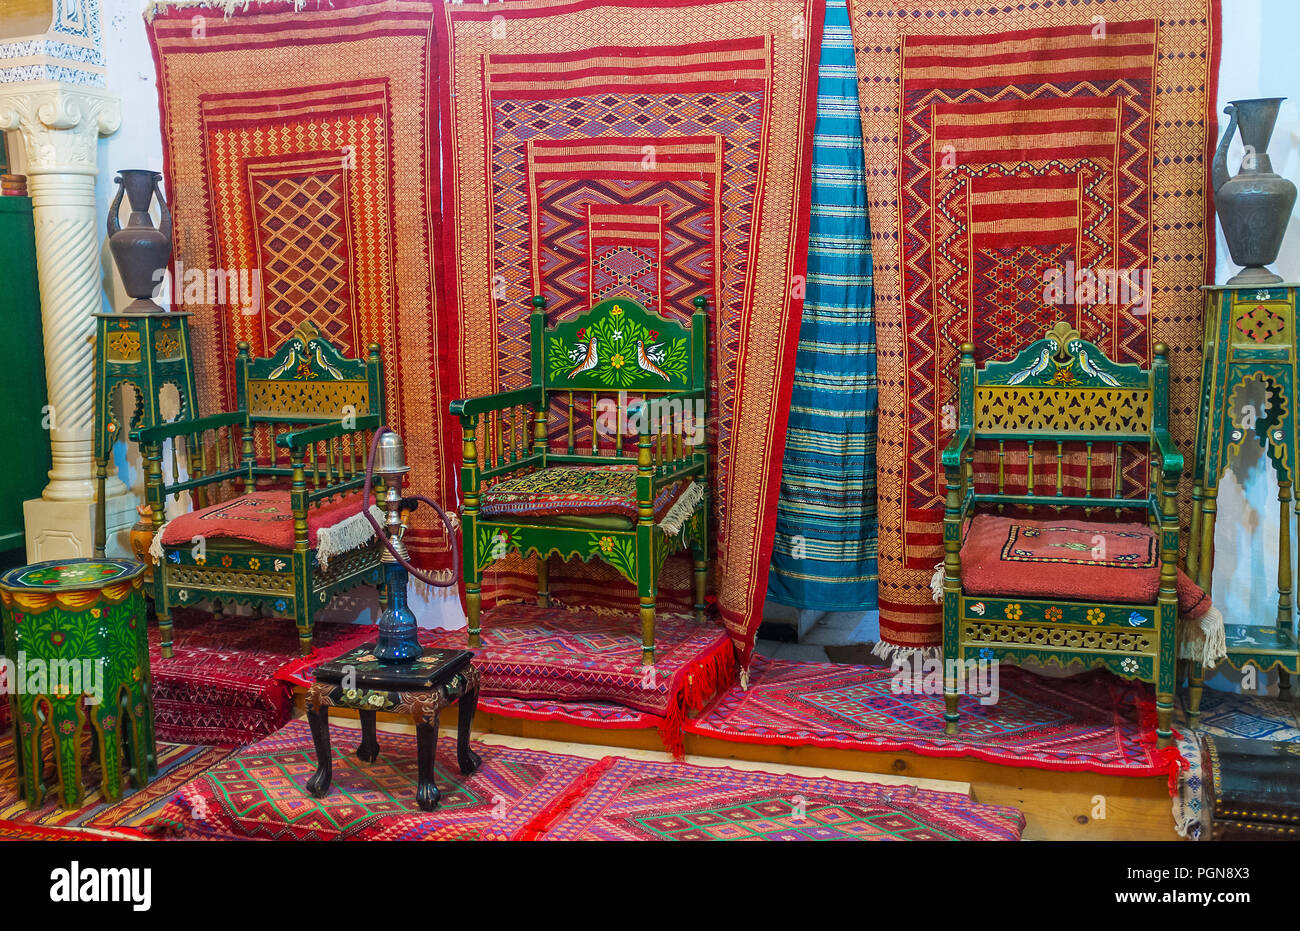 KAIROUAN, TUNISIE - 30 août 2015 : la chambre de Governor's Mansion décoré de bédouin traditionnel dans les tapis et meubles sculptés gamma rouge Banque D'Images